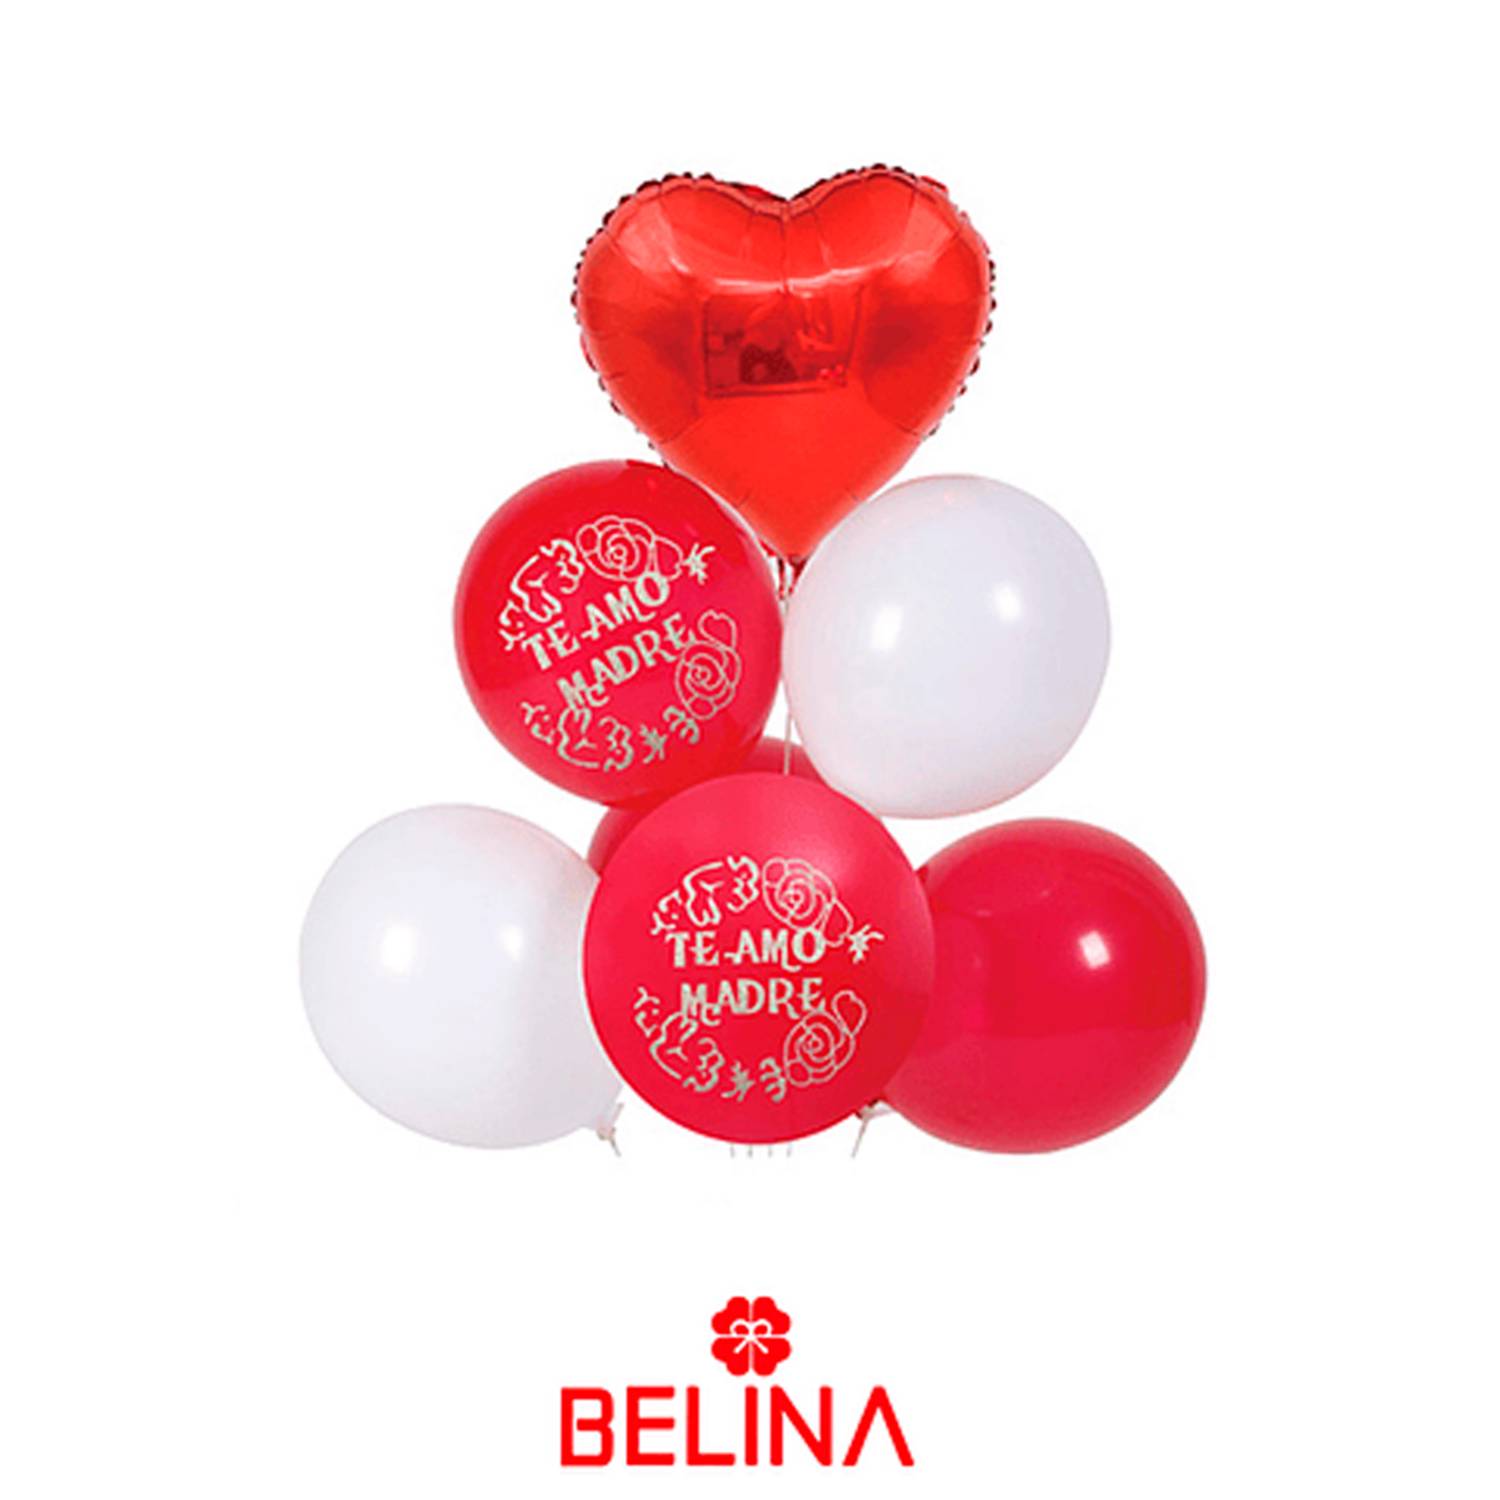 Soporte para globos redondo - Belina Cotillón